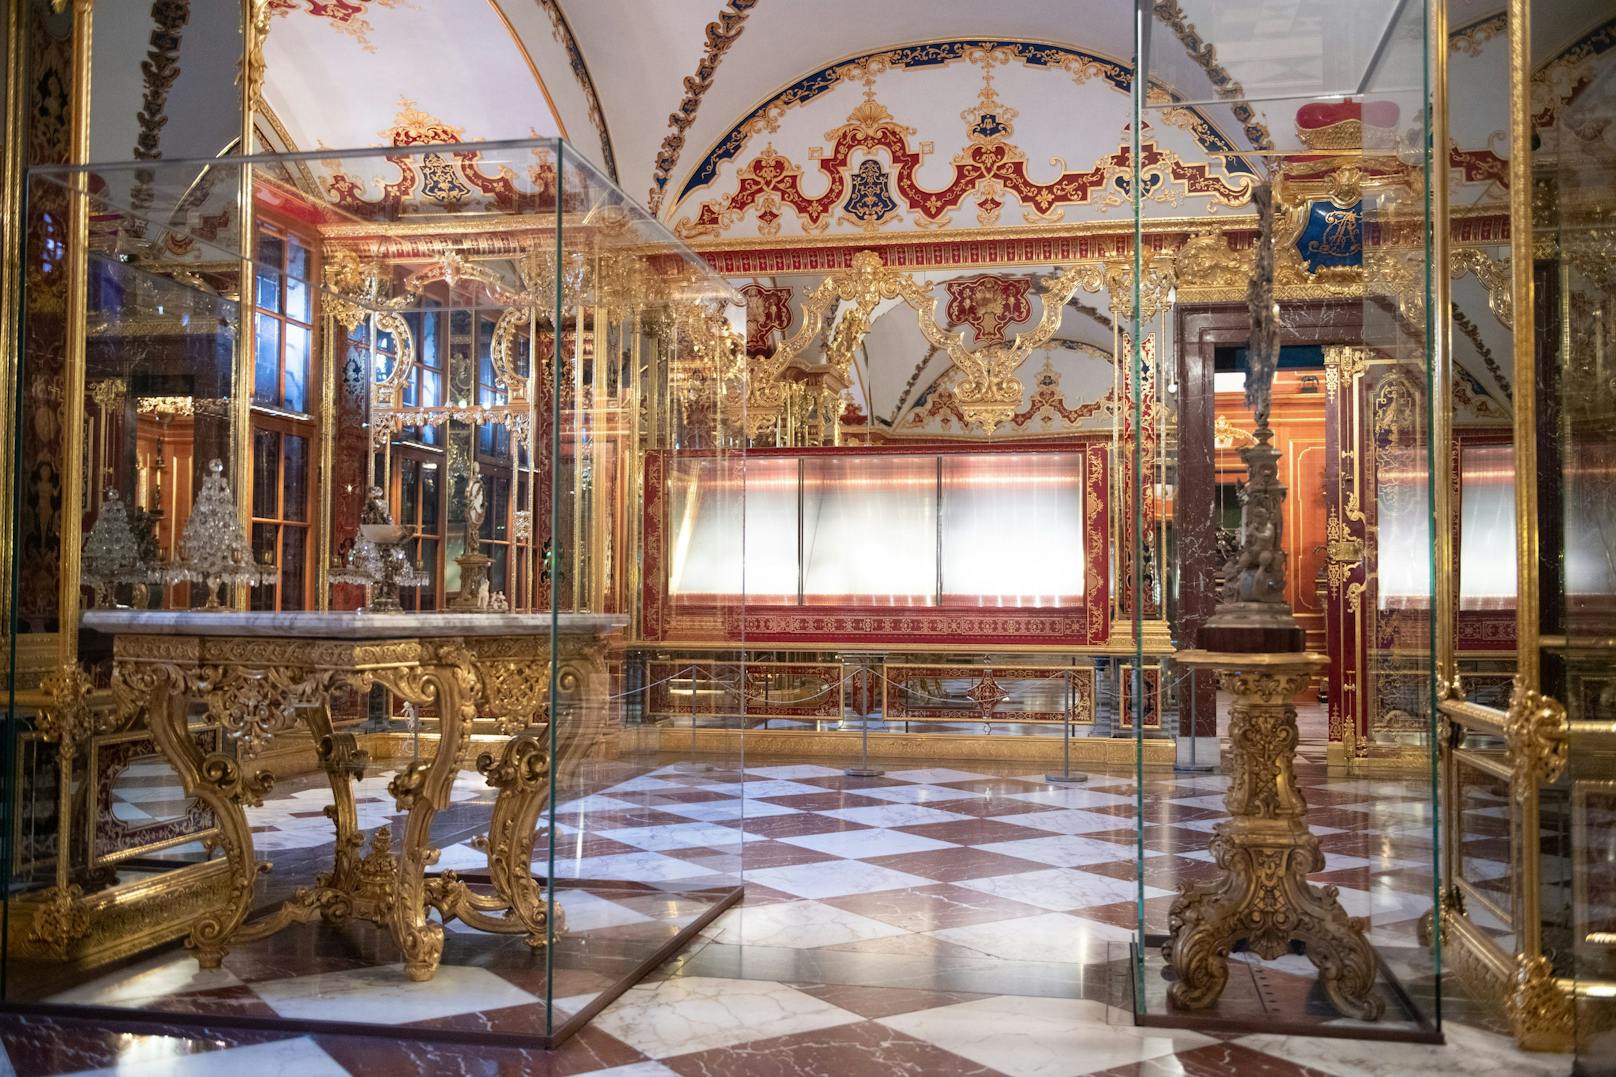 Die Täter plünderten die prunkvollen Hallen des Grünen Gewölbe. Dabei erbeuteten sie Juwelen im Wert von 113 Millionen Euro. (Archivbild)